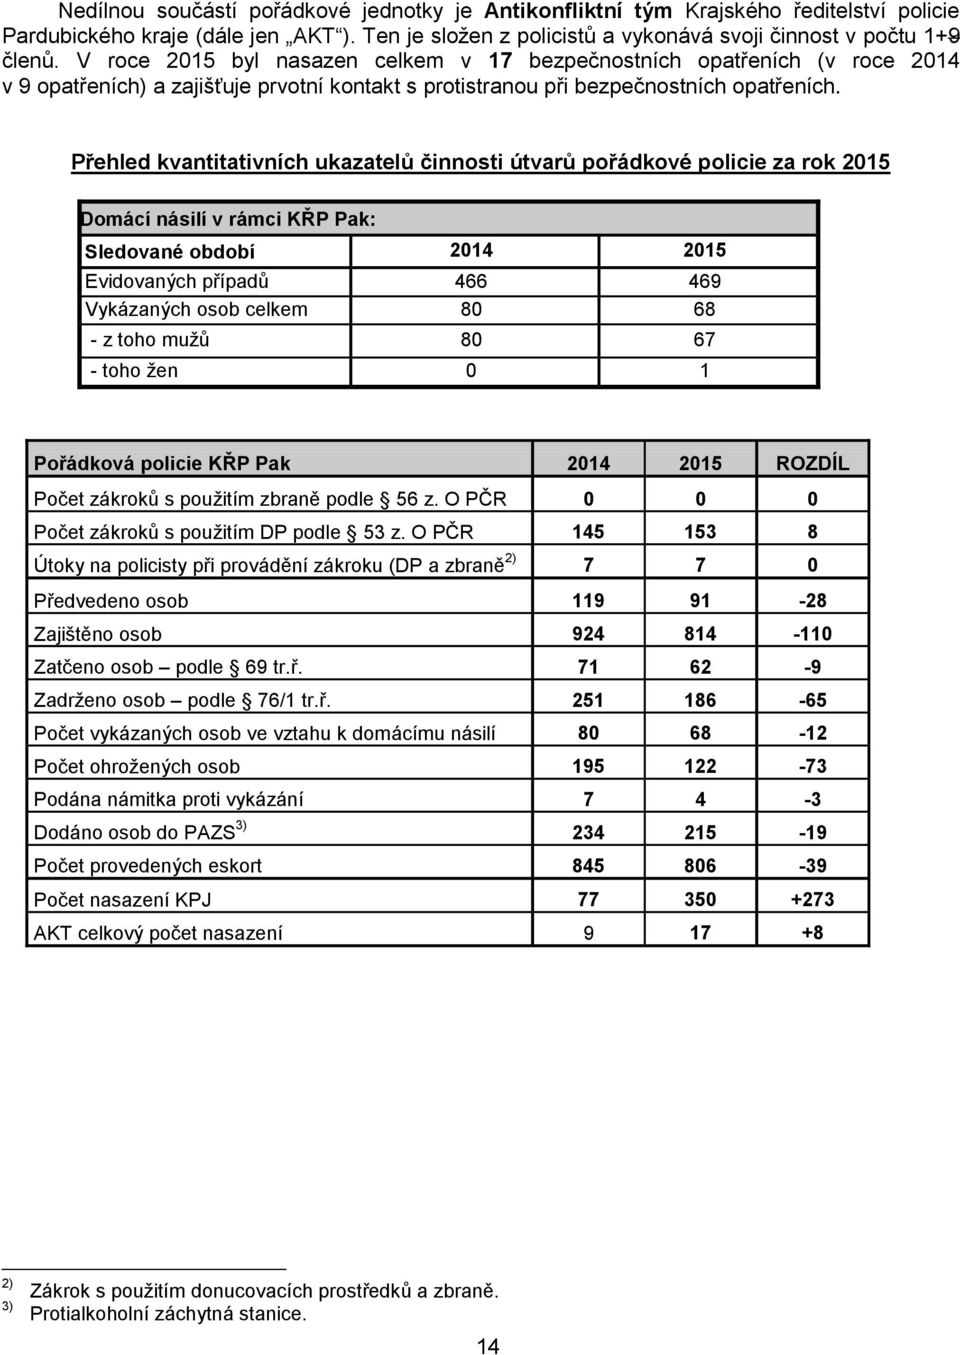 Přehled kvantitativních ukazatelů činnosti útvarů pořádkové policie za rok 2015 Domácí násilí v rámci KŘP Pak: Sledované období 2014 2015 Evidovaných případů 466 469 Vykázaných osob celkem 80 68 - z